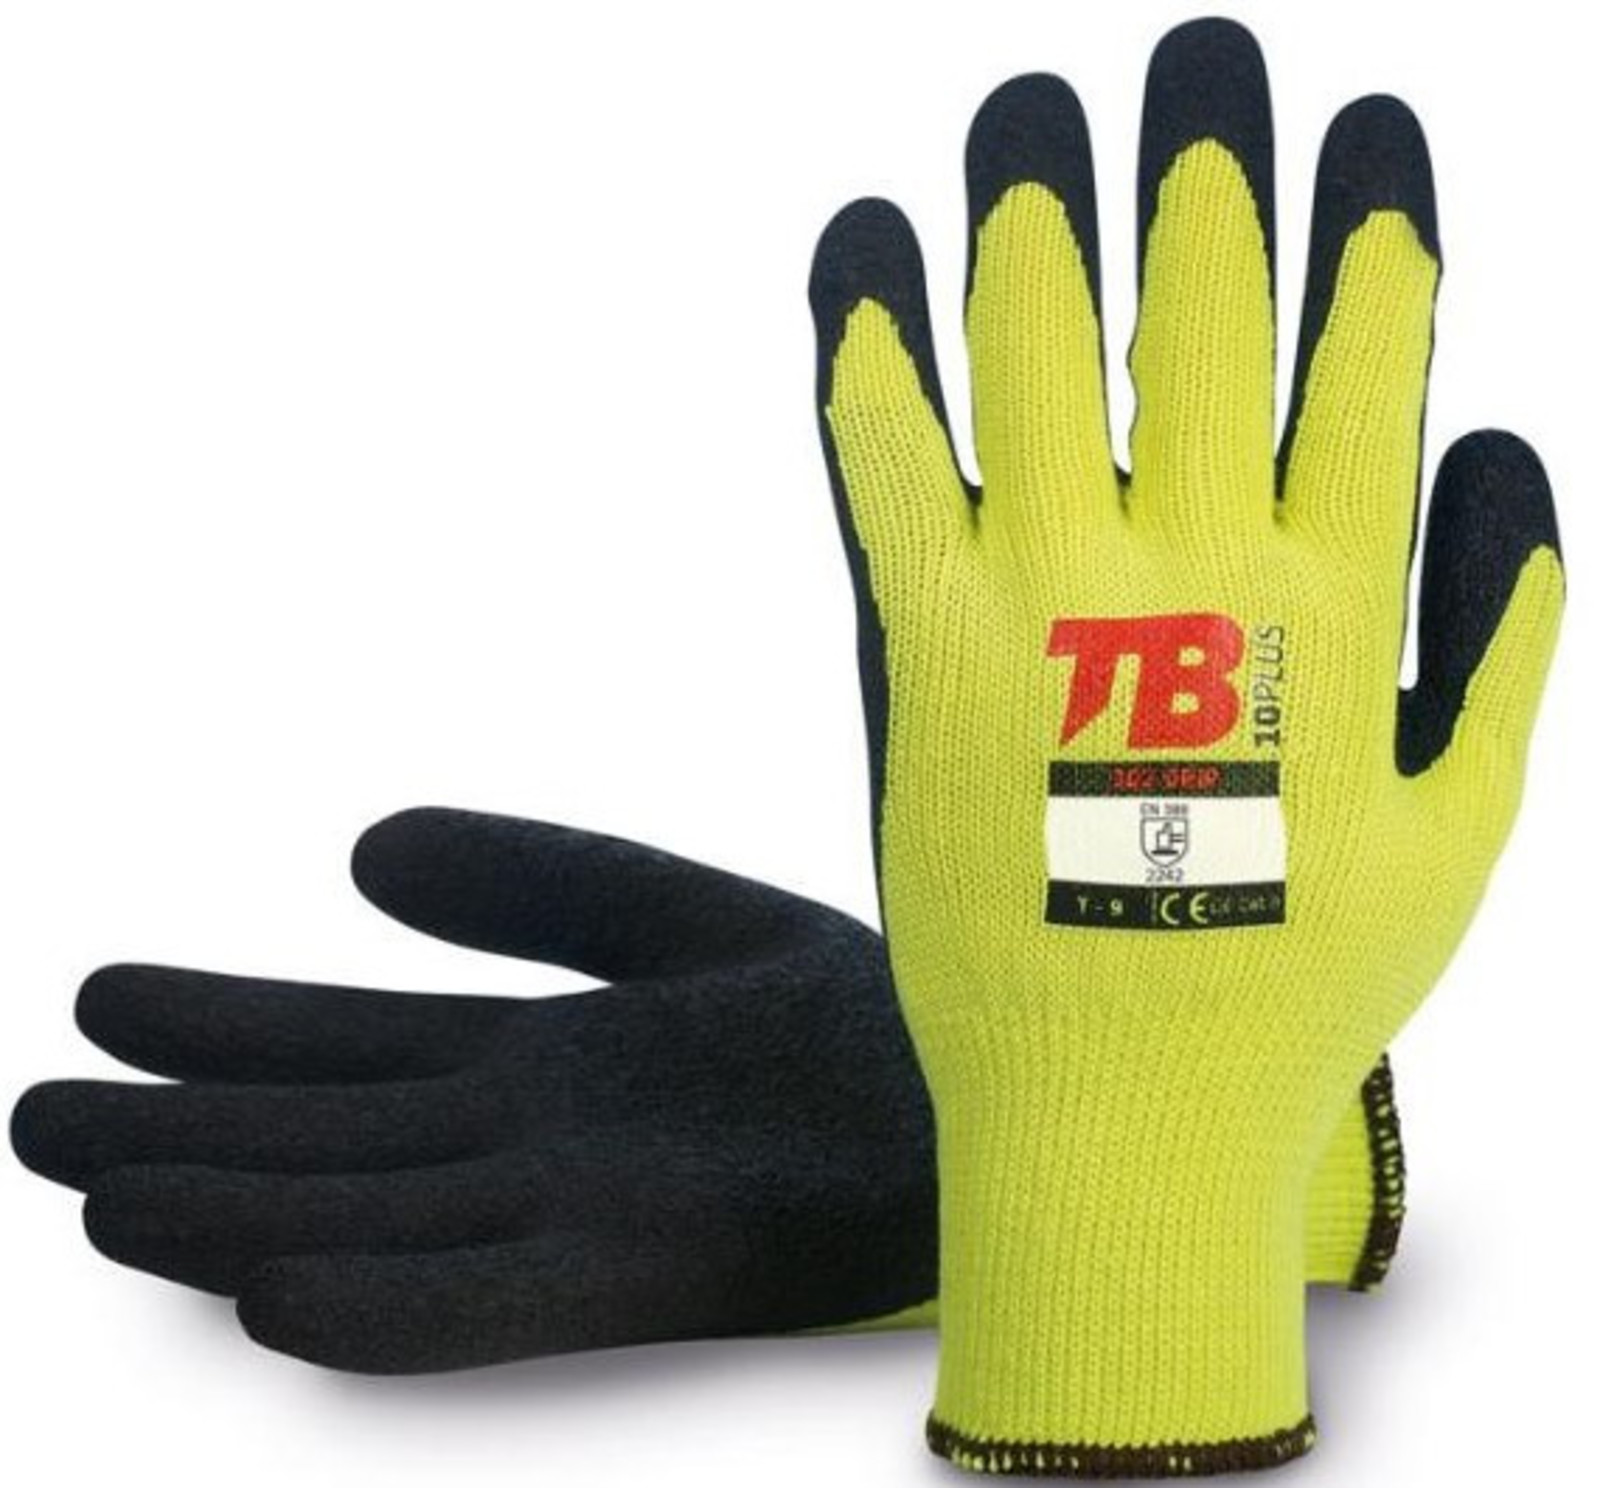 Pracovné rukavice TB 302 Grip - veľkosť: 10/XL